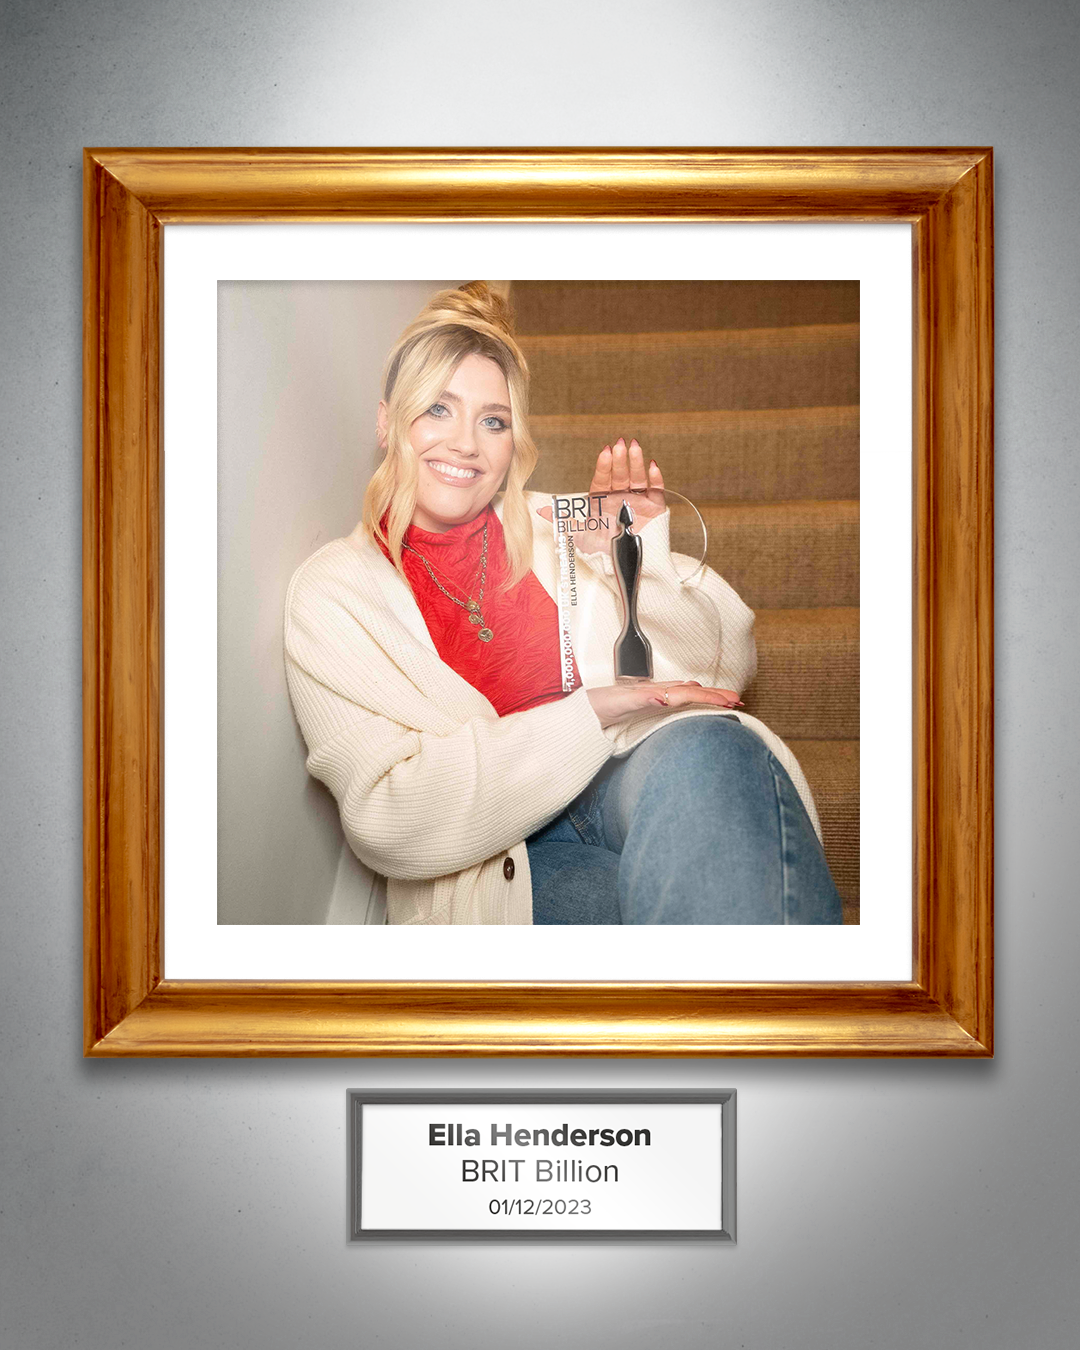 Ella Henderson with her BRIT Billion Award